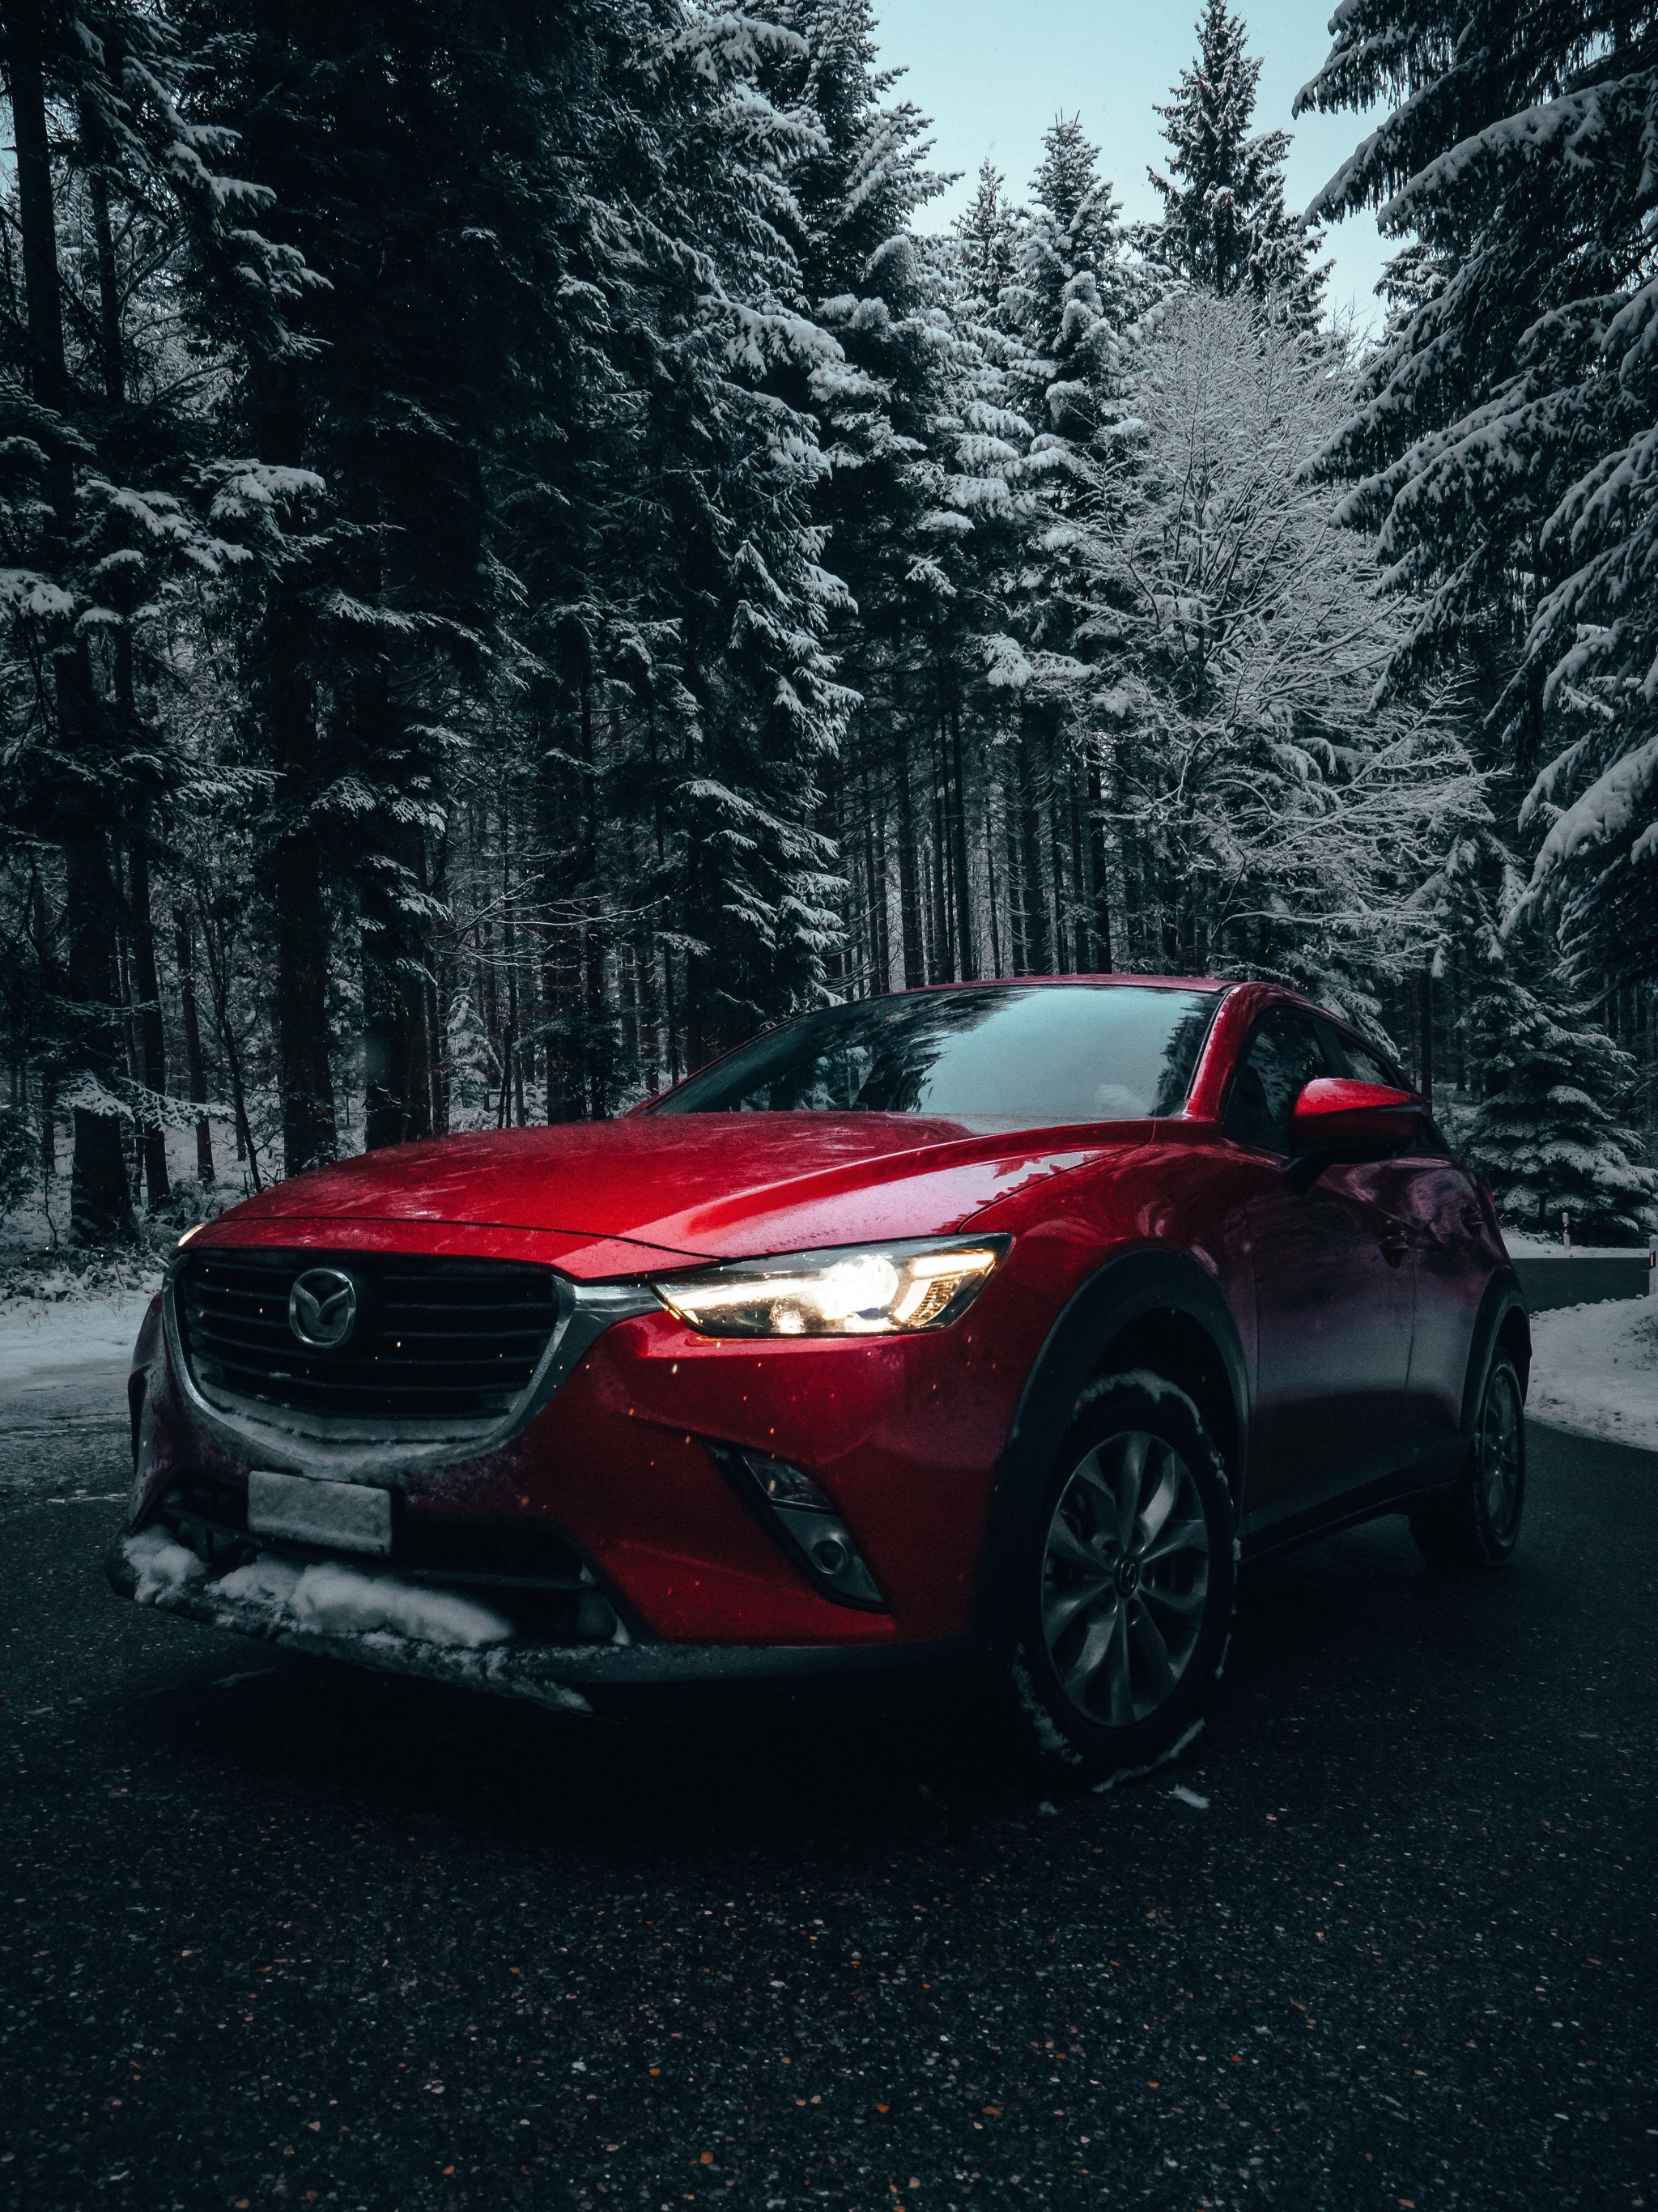 Картинка: Зима, лес, снег, дорога, деревья, автомобиль, красный, Mazda 6